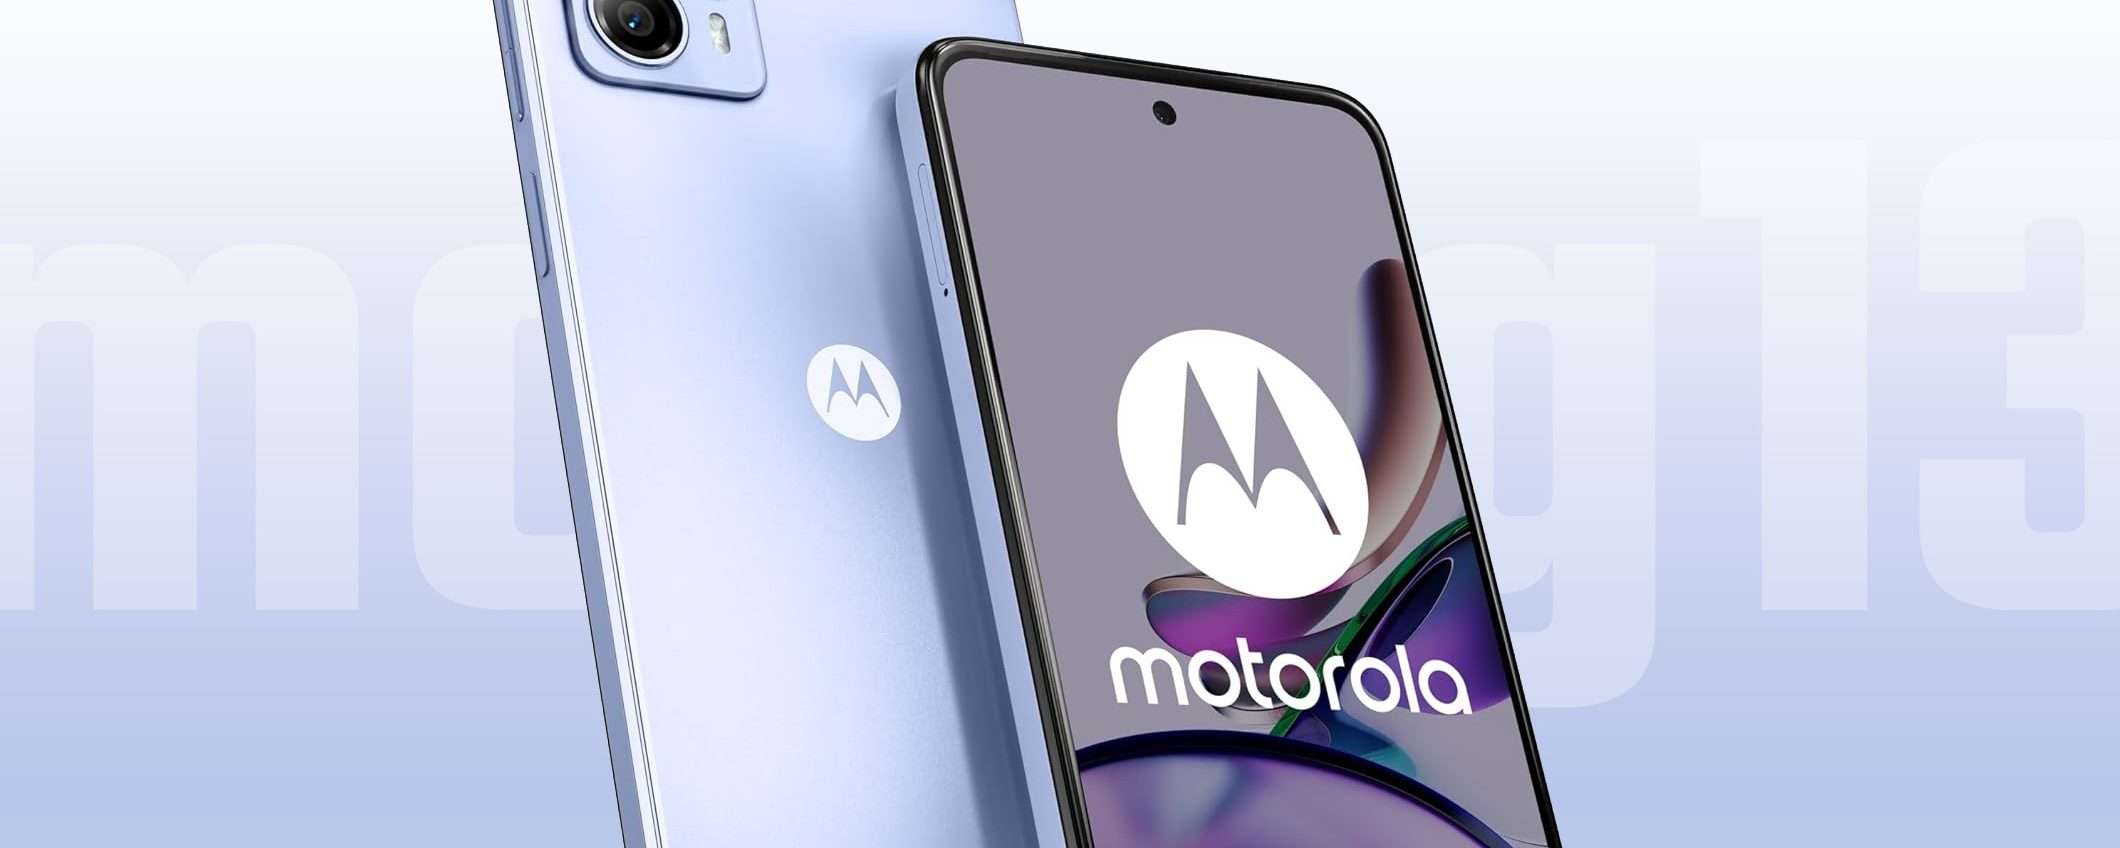 Lo smartphone Motorola moto g13 è sceso a 99 euro